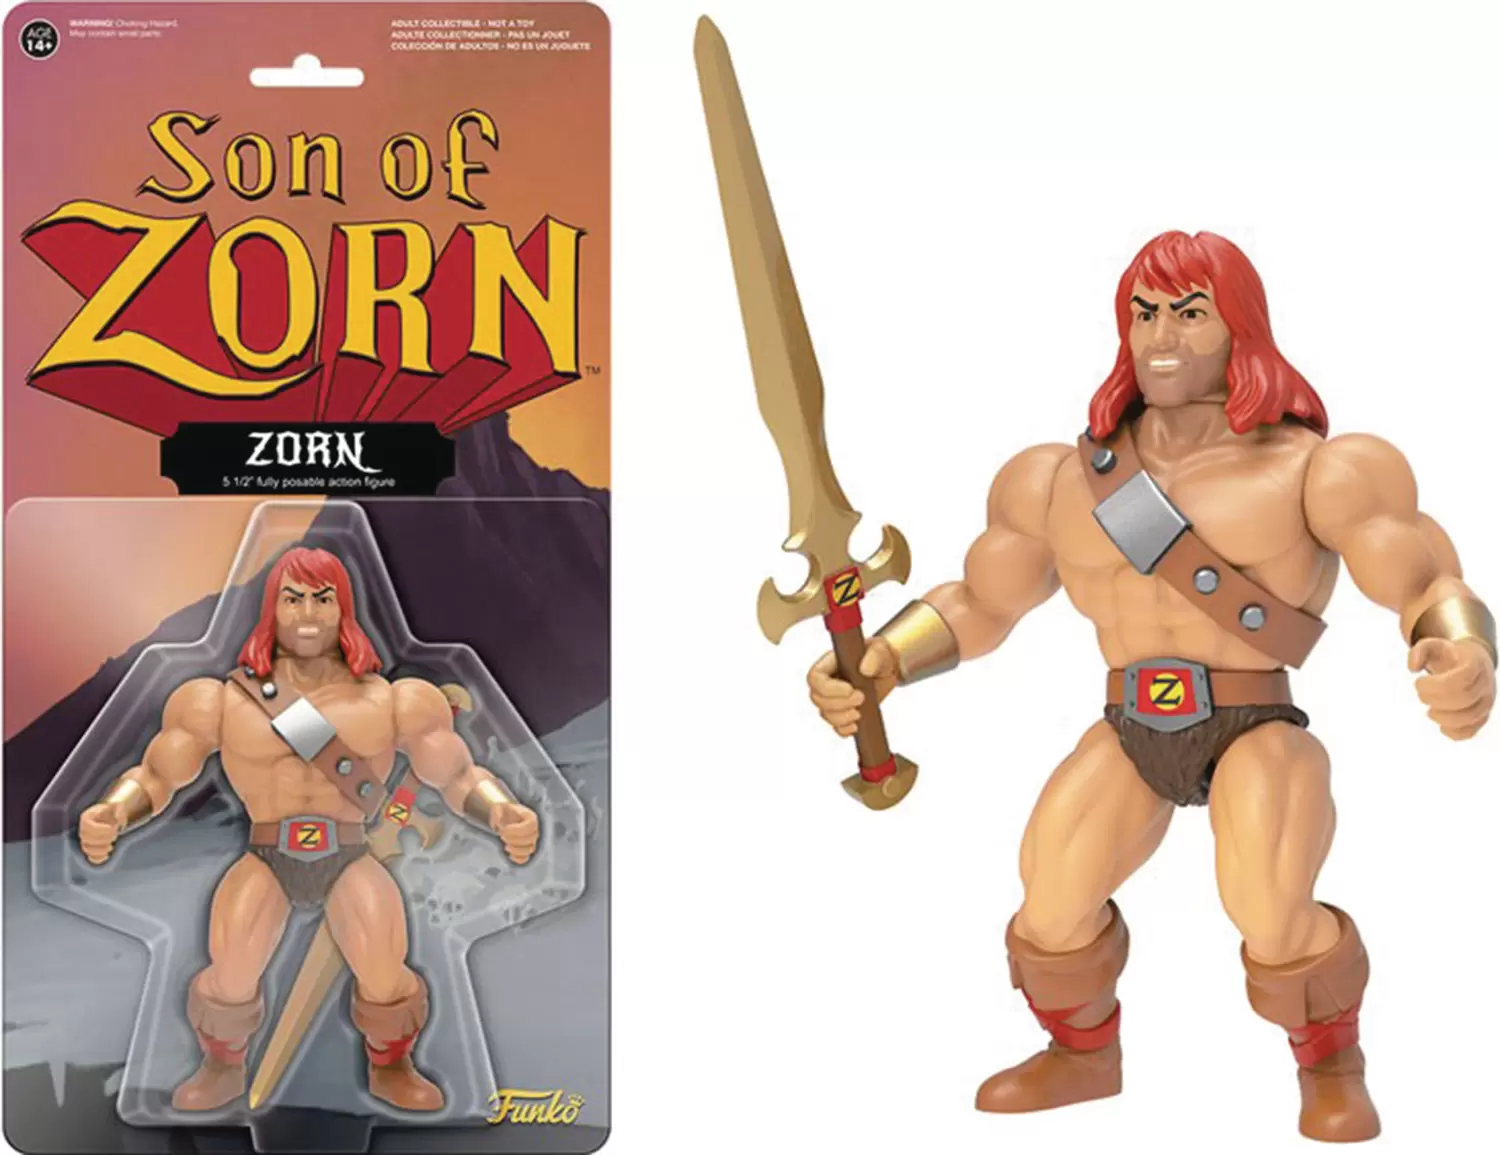 Retro Action Figure - Son of Zorn - Zorn